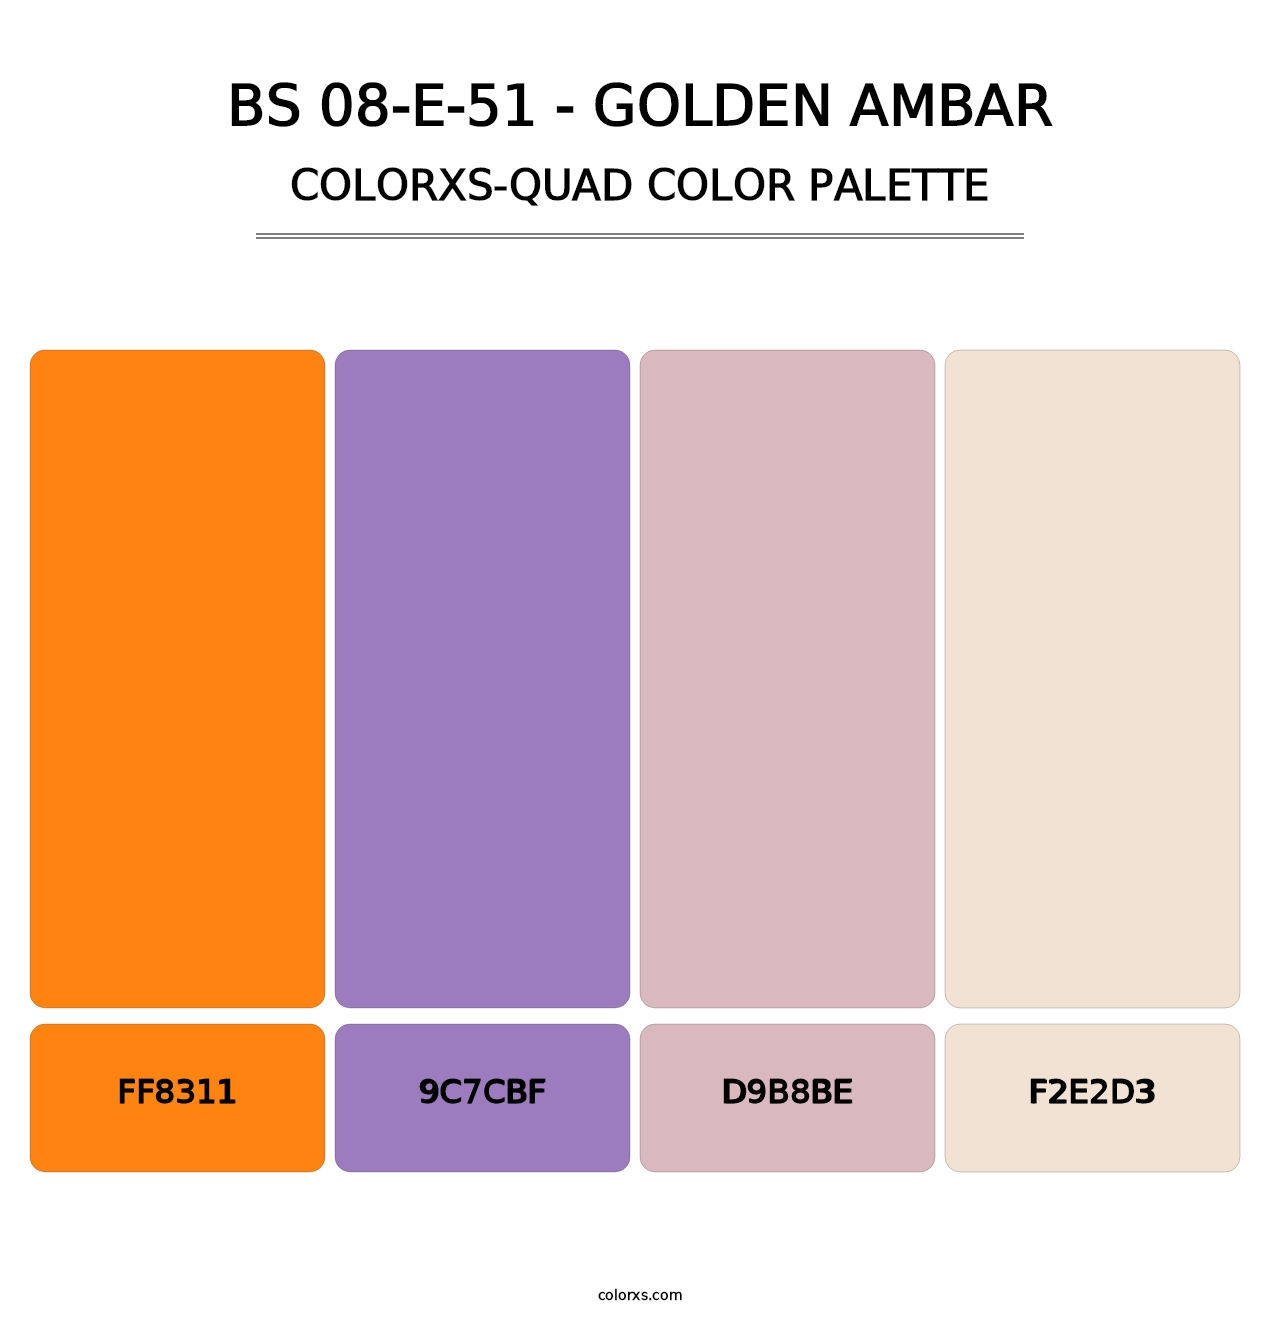 BS 08-E-51 - Golden Ambar - Colorxs Quad Palette